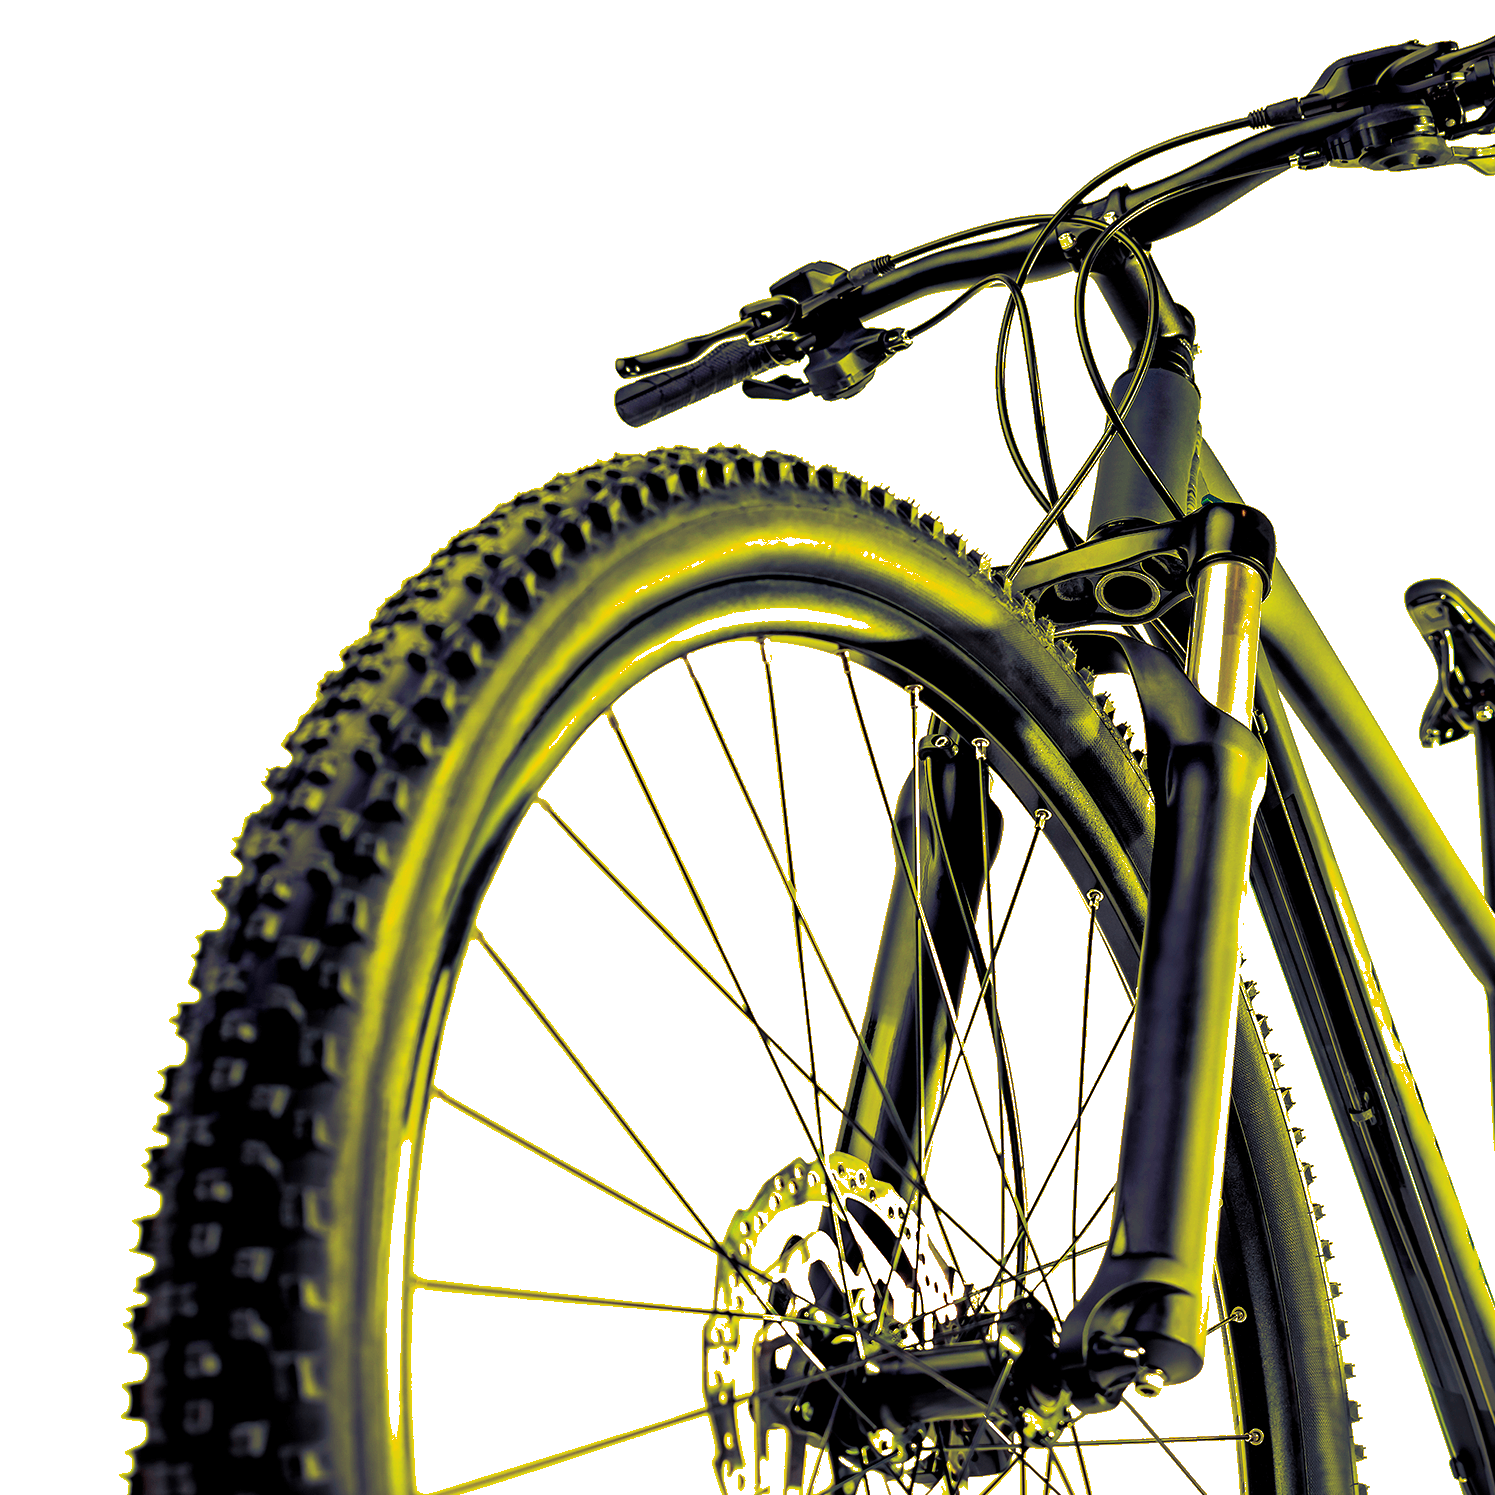 En la foto, se aprecia la rueda, el manubrio y el marco de una bicicleta de montaña. Es negra y tiene suspensión para participar en esta disciplina.